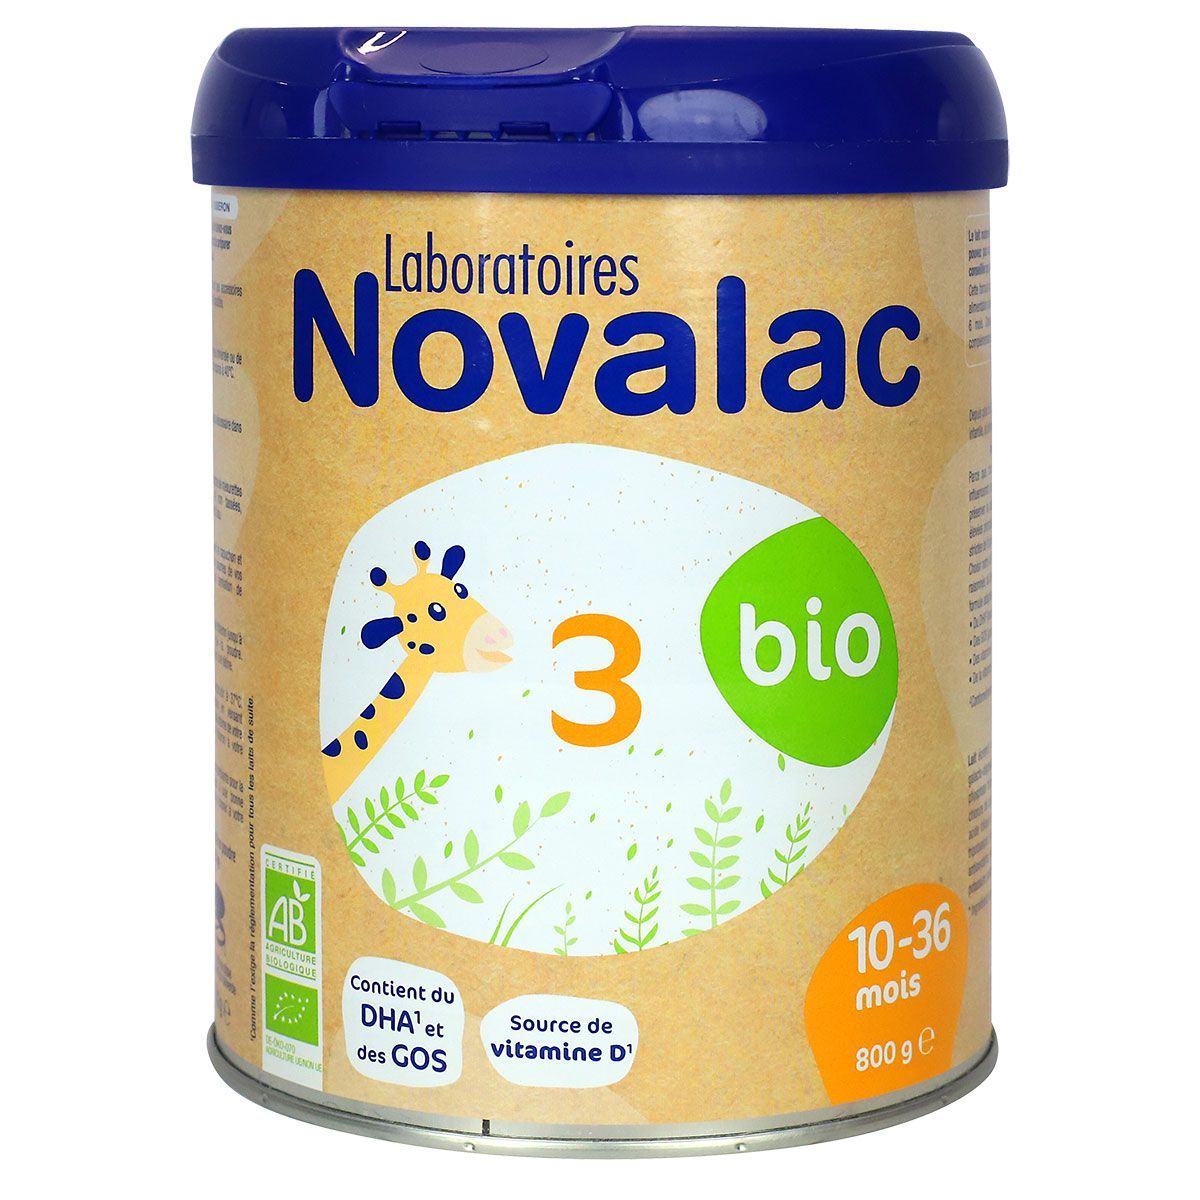 Novalac Bio 3ème âge (10-36 mois) est un lait qui peut être donné